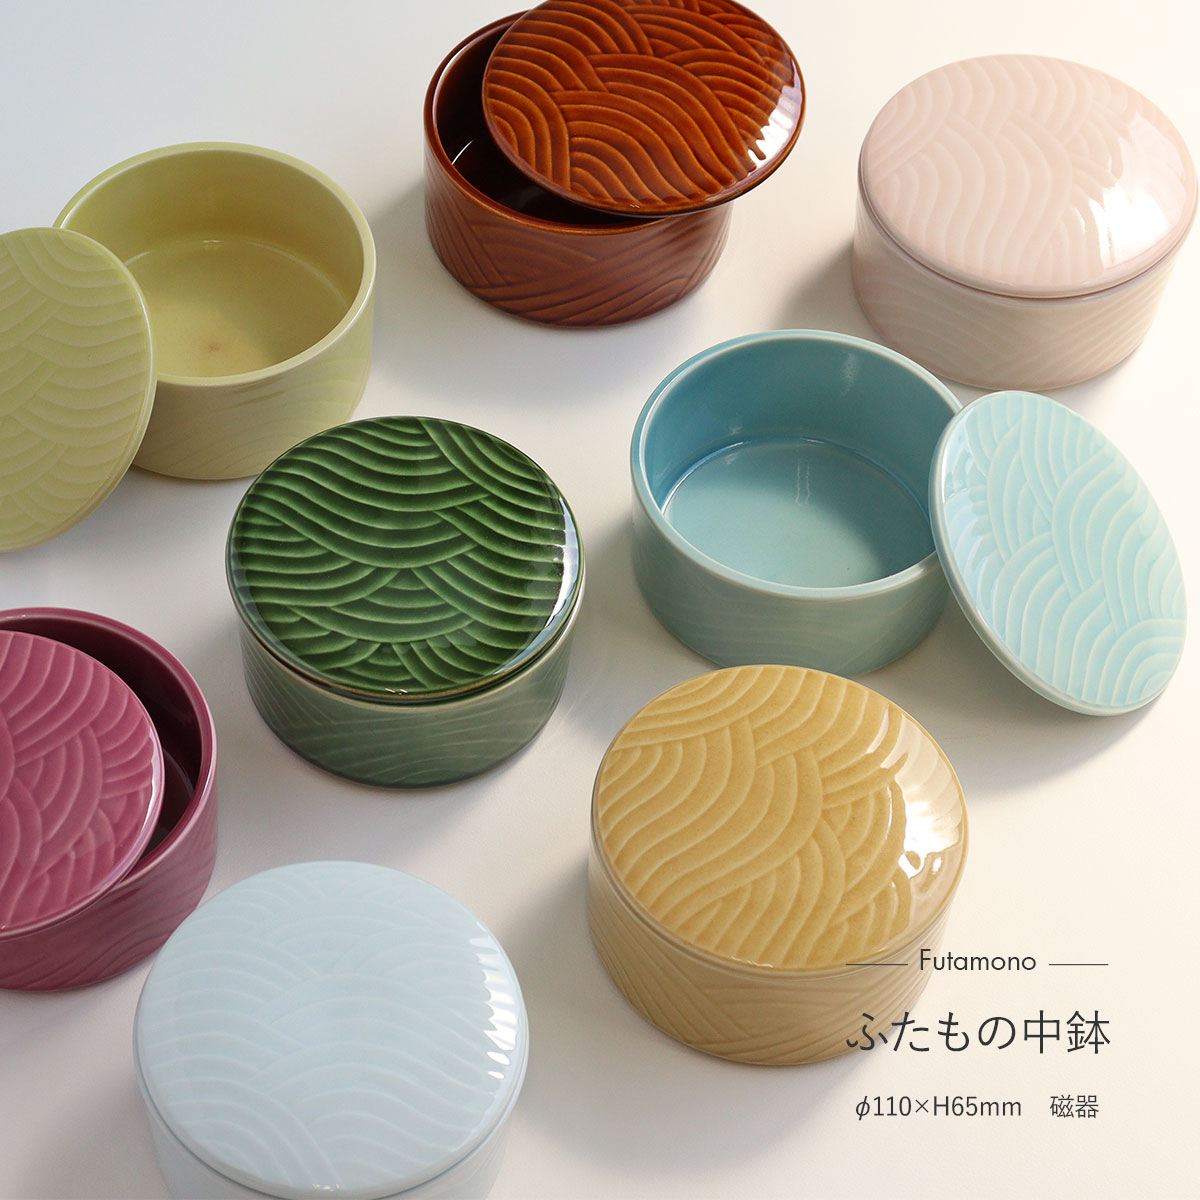 【楽天市場】中鉢 蓋つき ふたもの中鉢 磁器 全8色 日本製 美濃焼